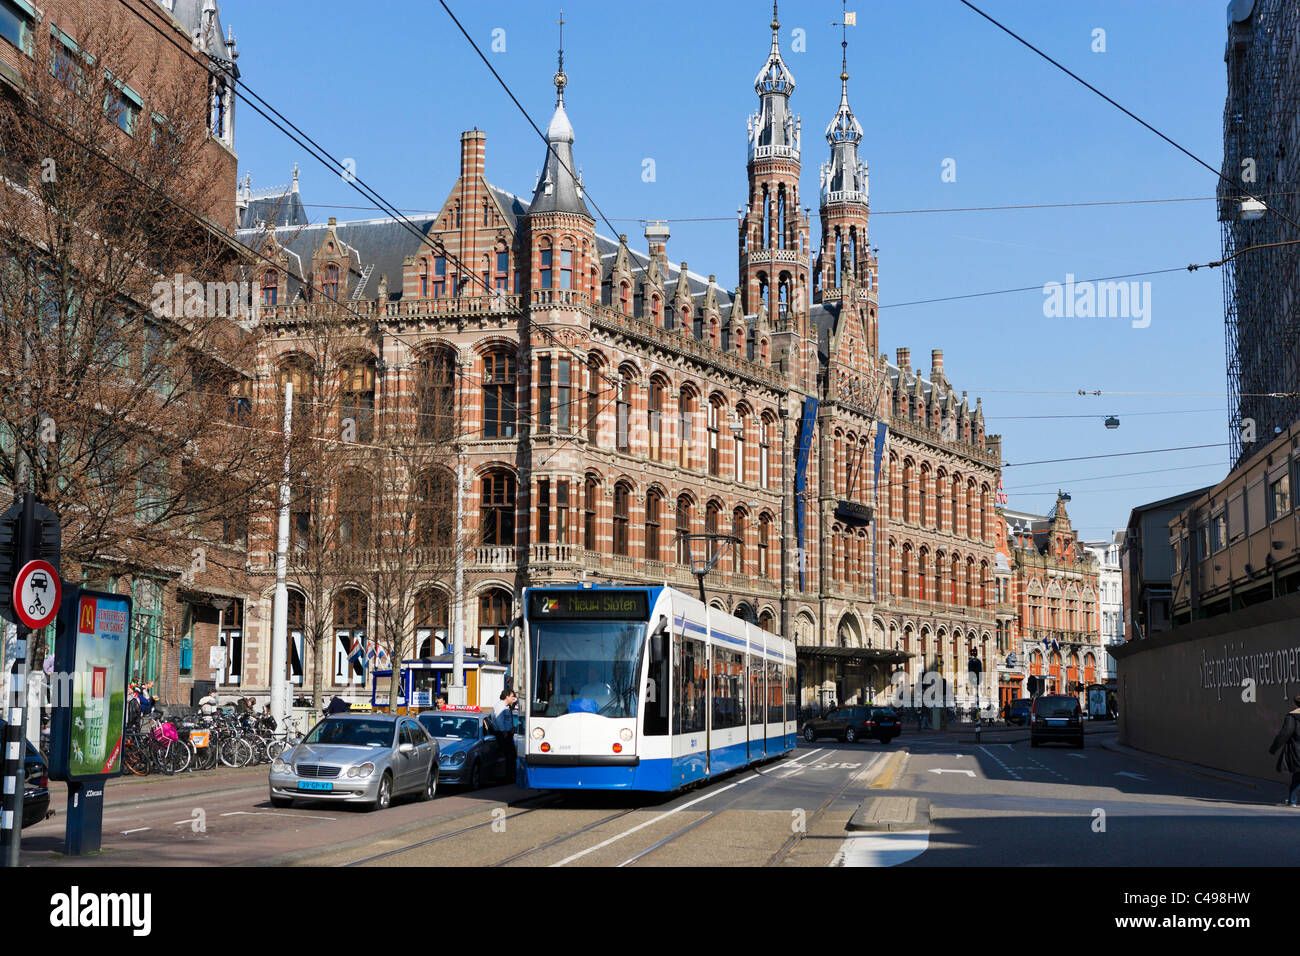 Tramway en face de la Magna Plaza Shopping Center (autrefois un bureau de poste), Nieuwezijds Voorburgwal, Amsterdam, Pays-Bas Banque D'Images